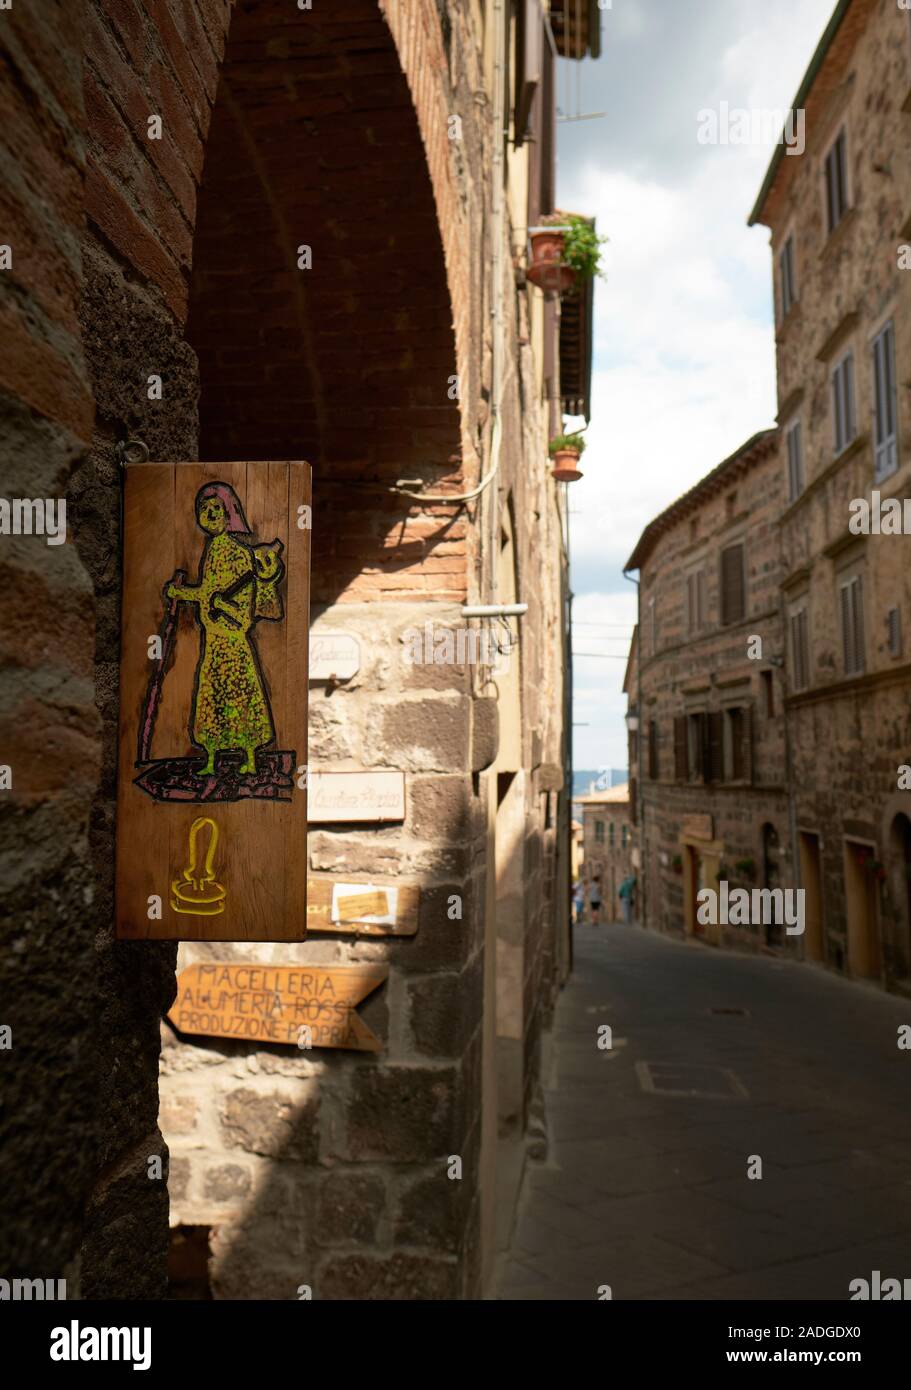 Letreros pintados marcado por la histórica peregrinación pasaporte el sello de la ruta a pie de la Via Francigena a Roma en Radicofani Toscana Italia UE Foto de stock